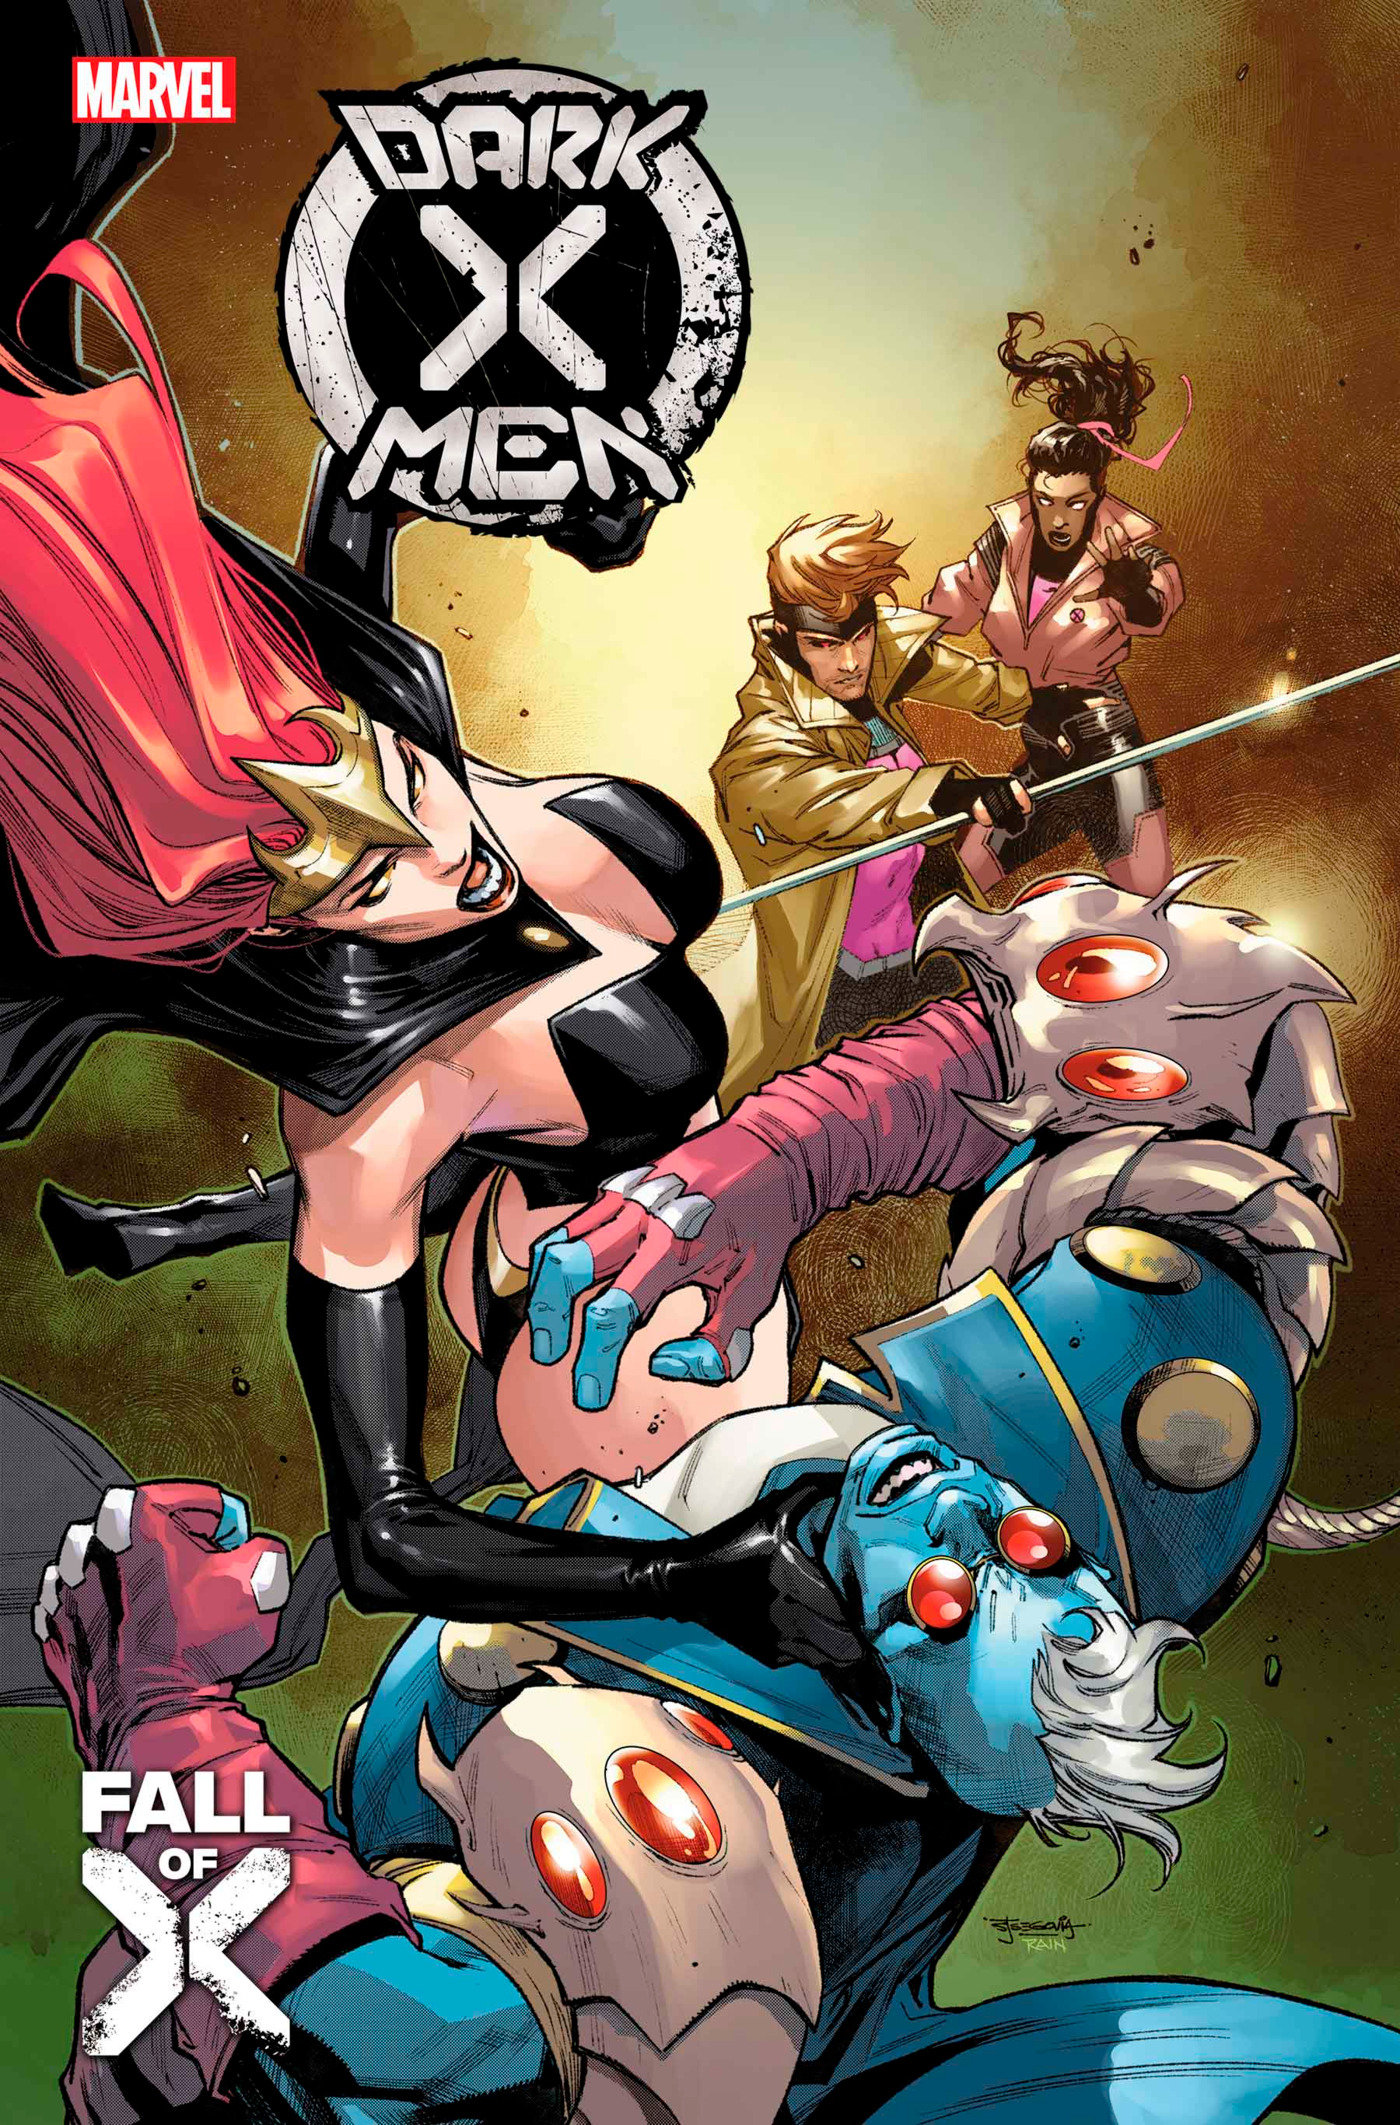 Dark X-Men #2 (Fall of the X-Men)